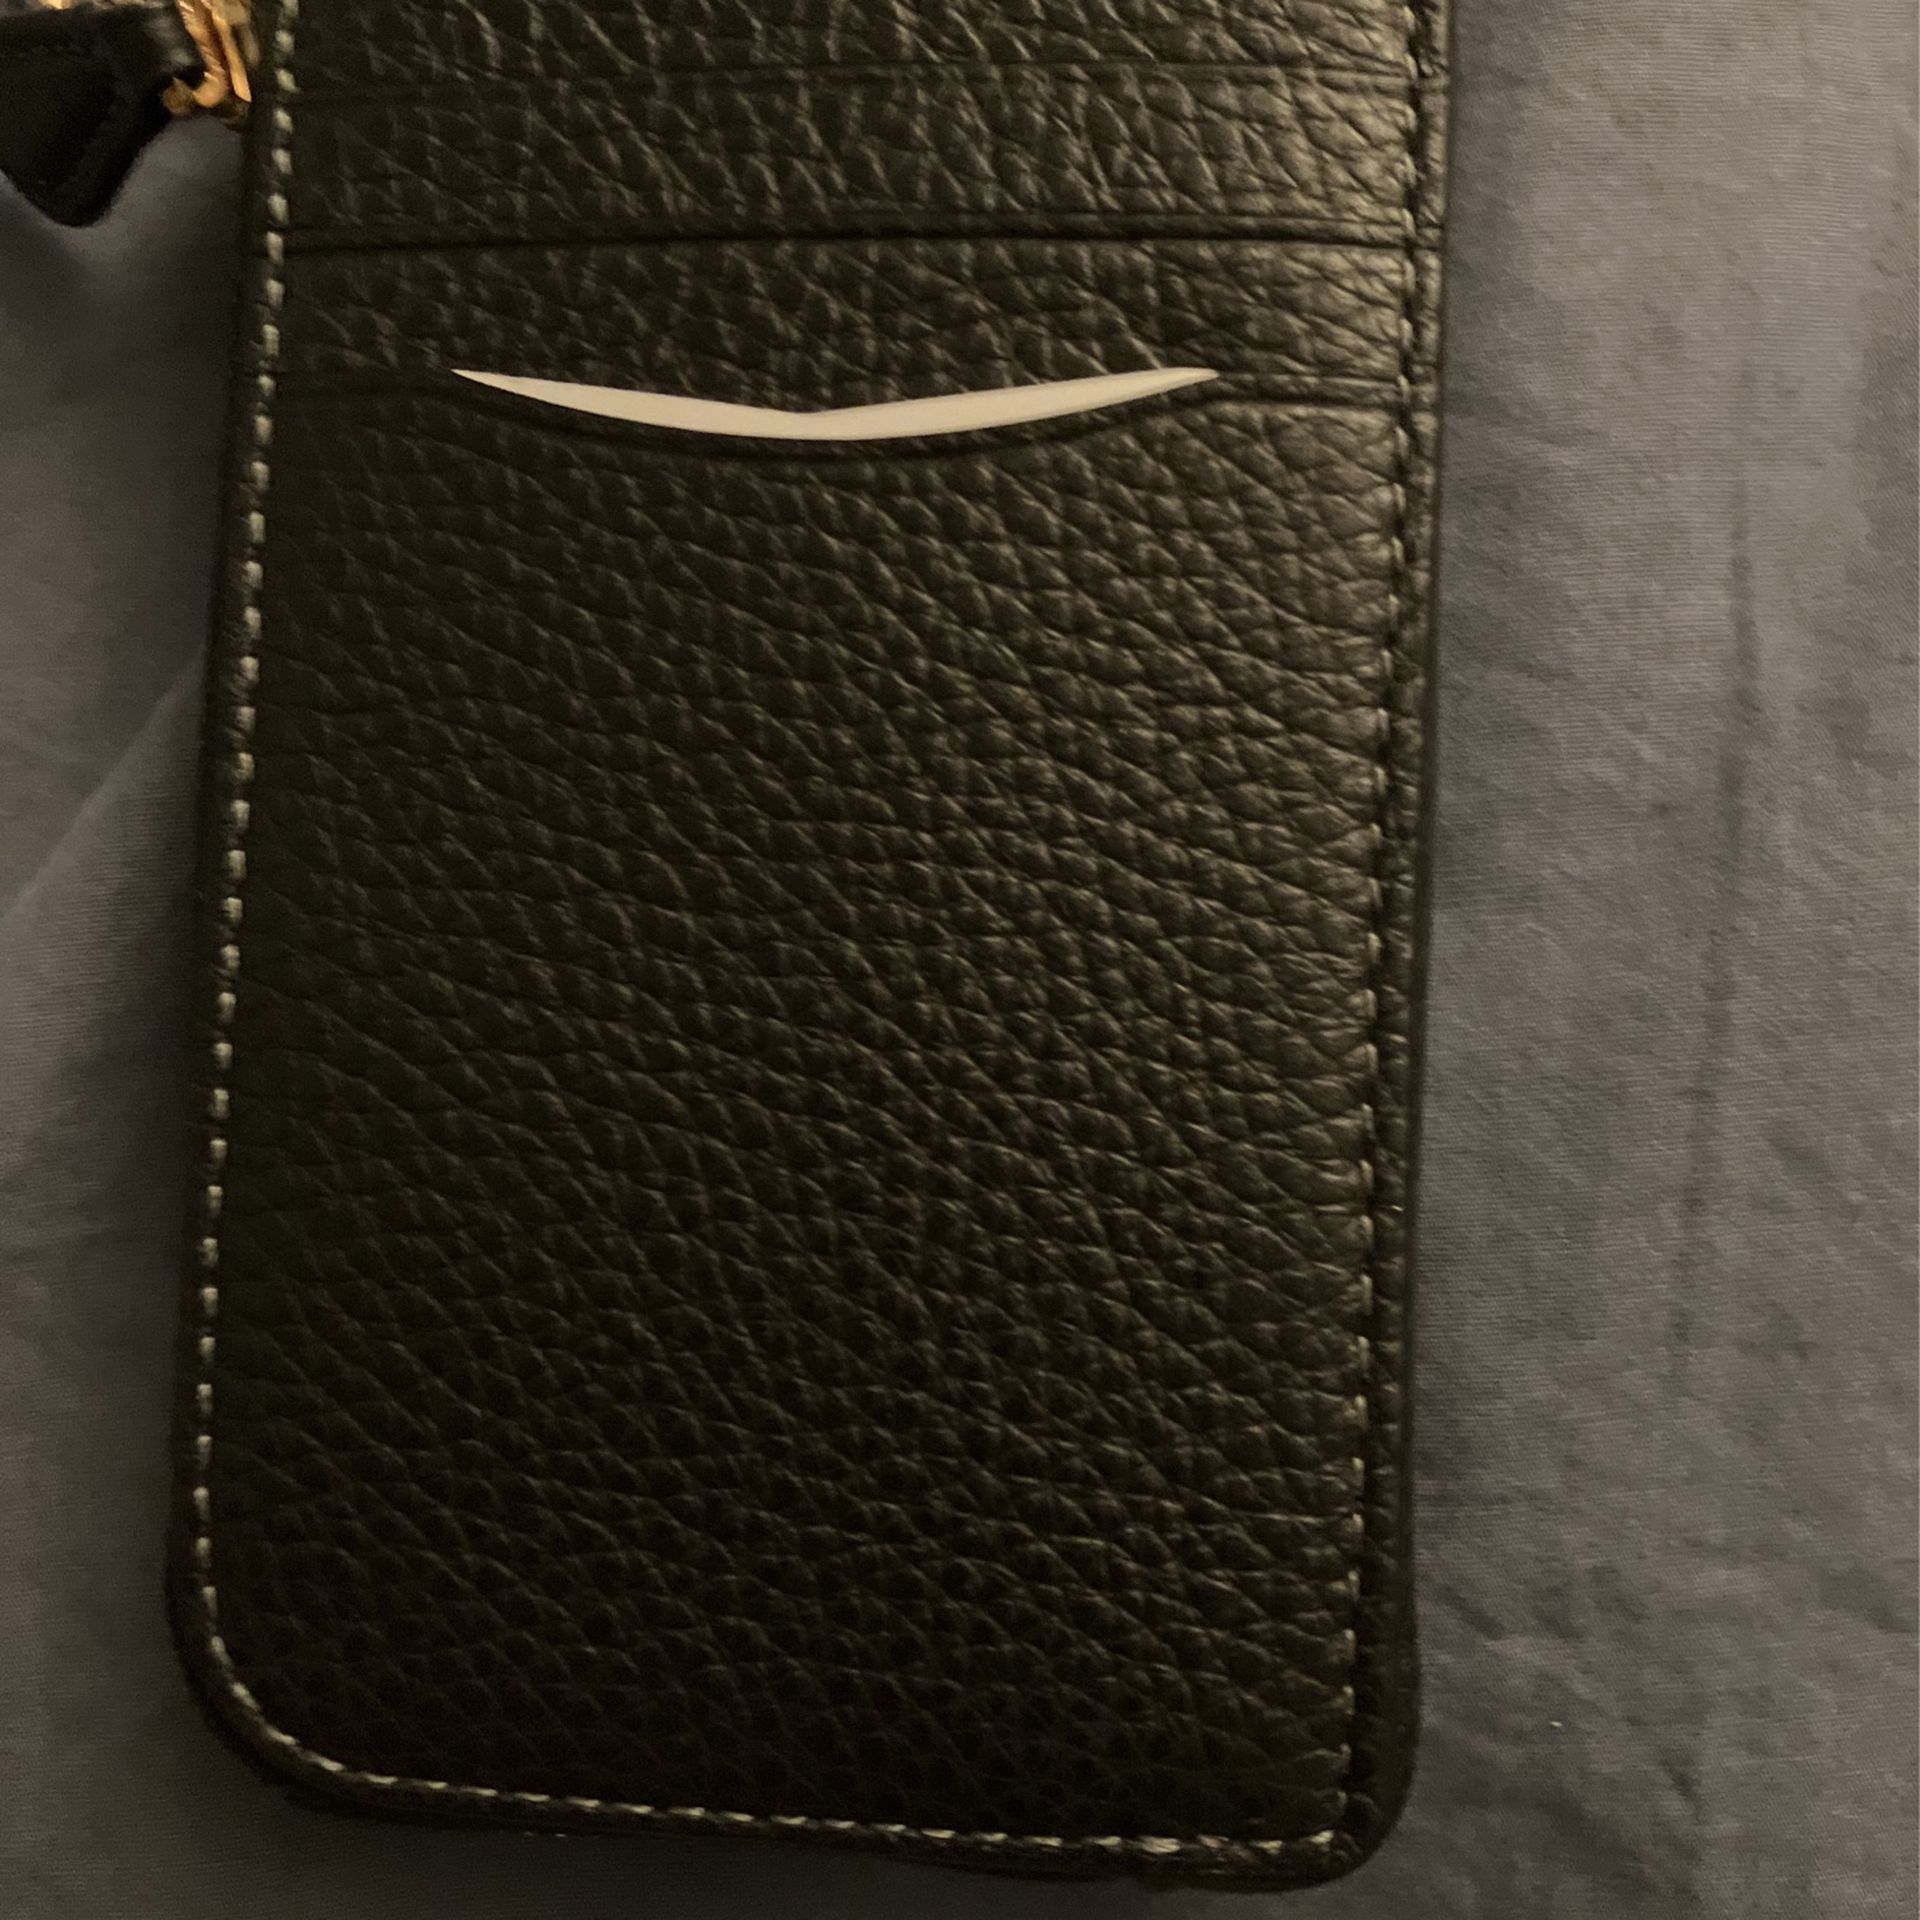 Designer Coach Keychain Wallet for Sale in Phoenix, AZ - OfferUp